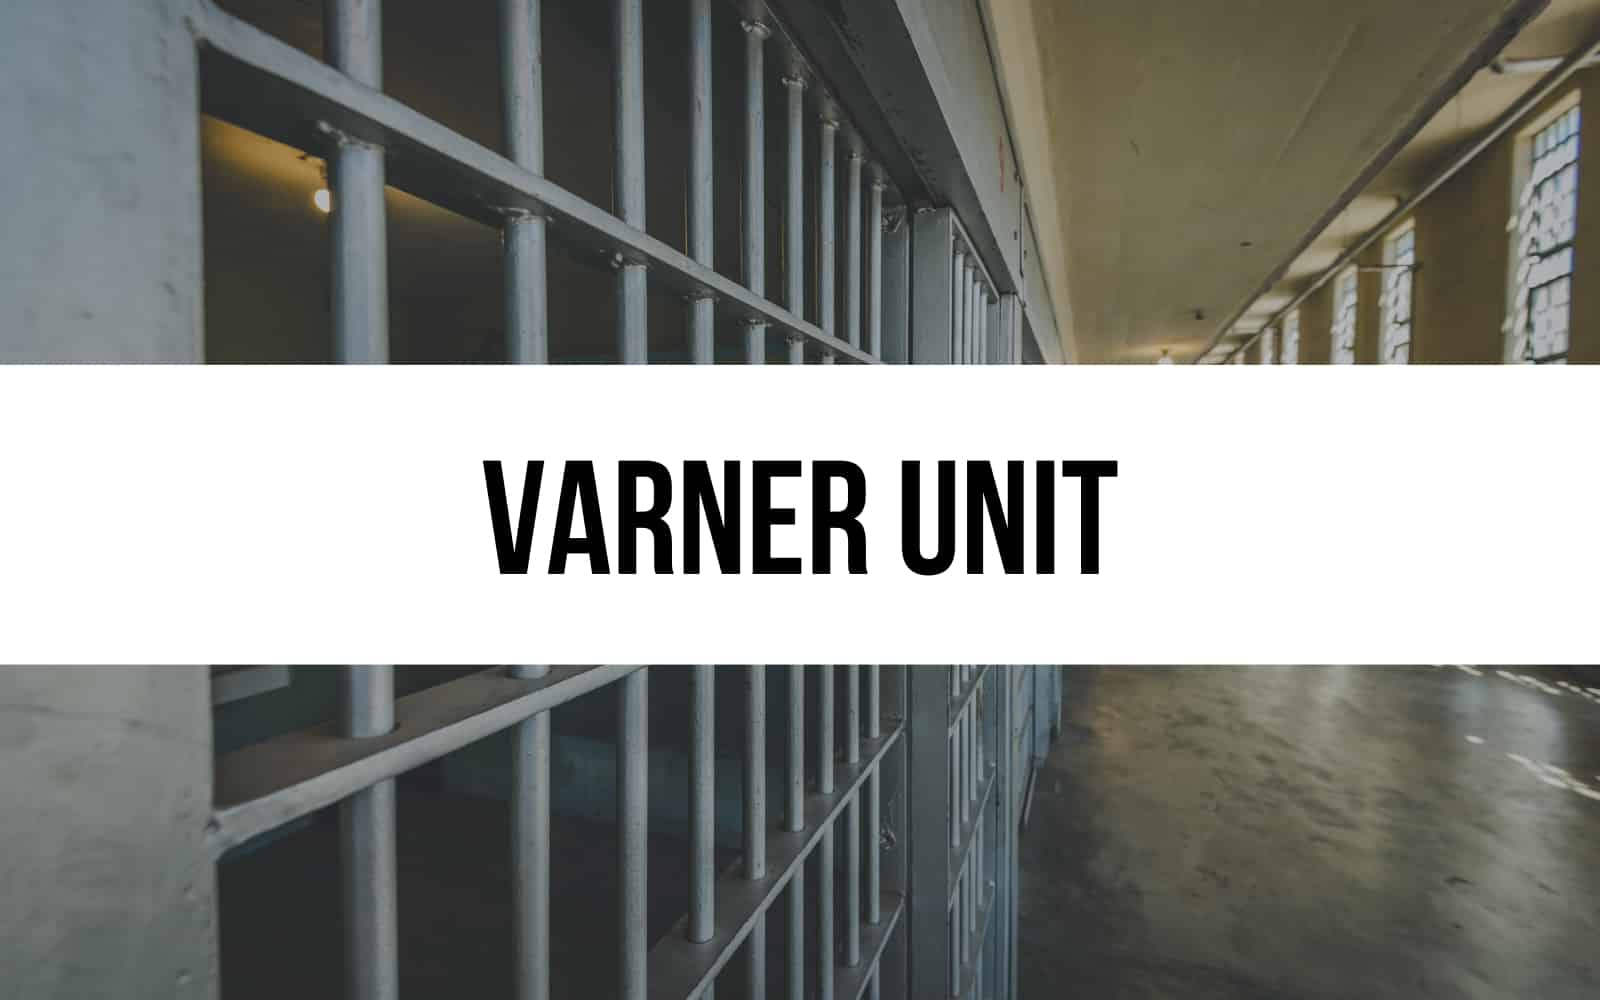 Varner Unit